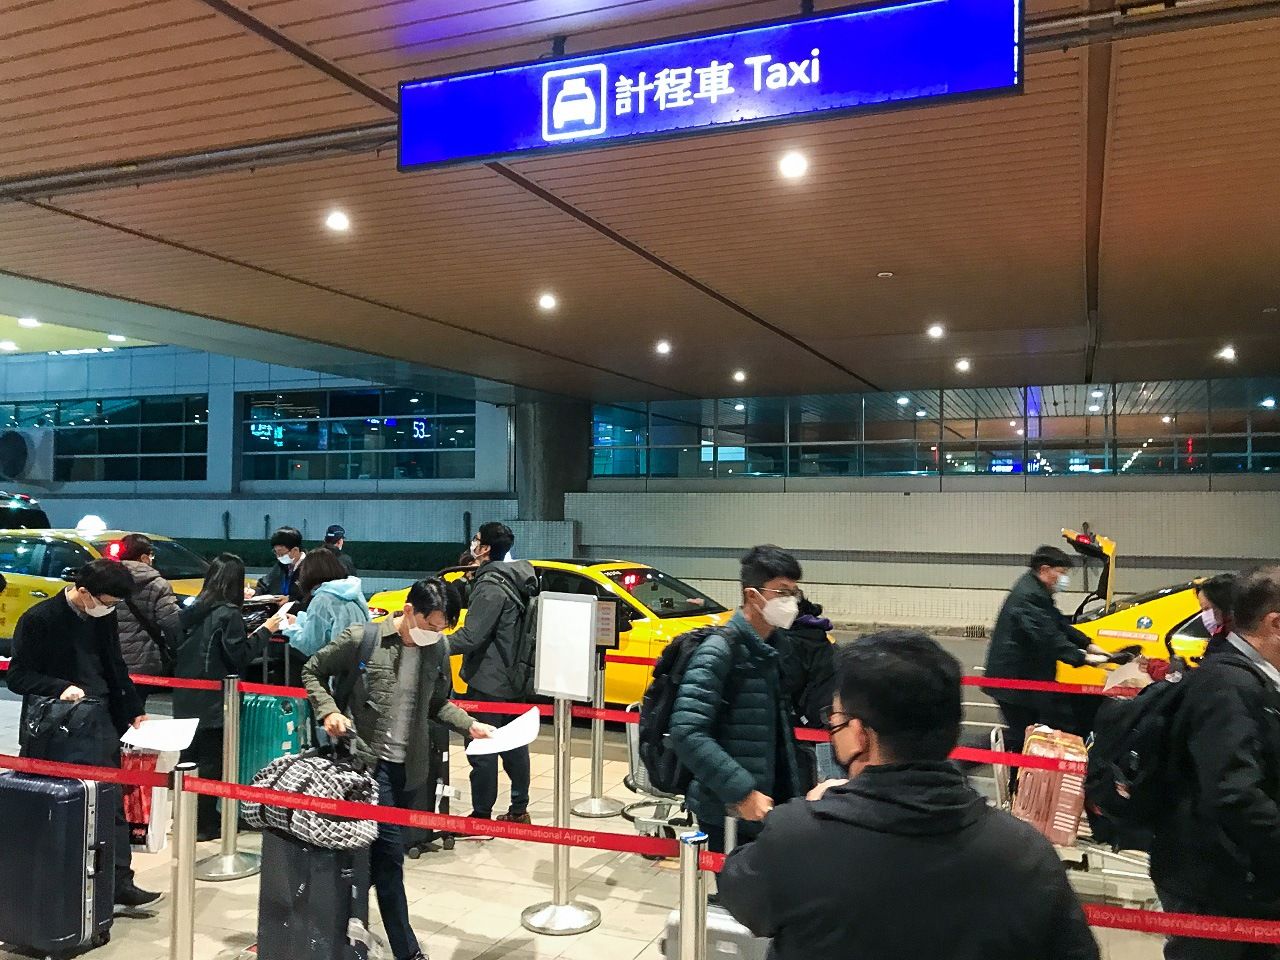 De longues files d’attente se déploient devant les taxis spécialement affrétés pour tout nouvel arrivant à Taïwan. Depuis avril 2020, c’est le seul moyen de transport autorisé pour toutes les personnes arrivant de l'étranger